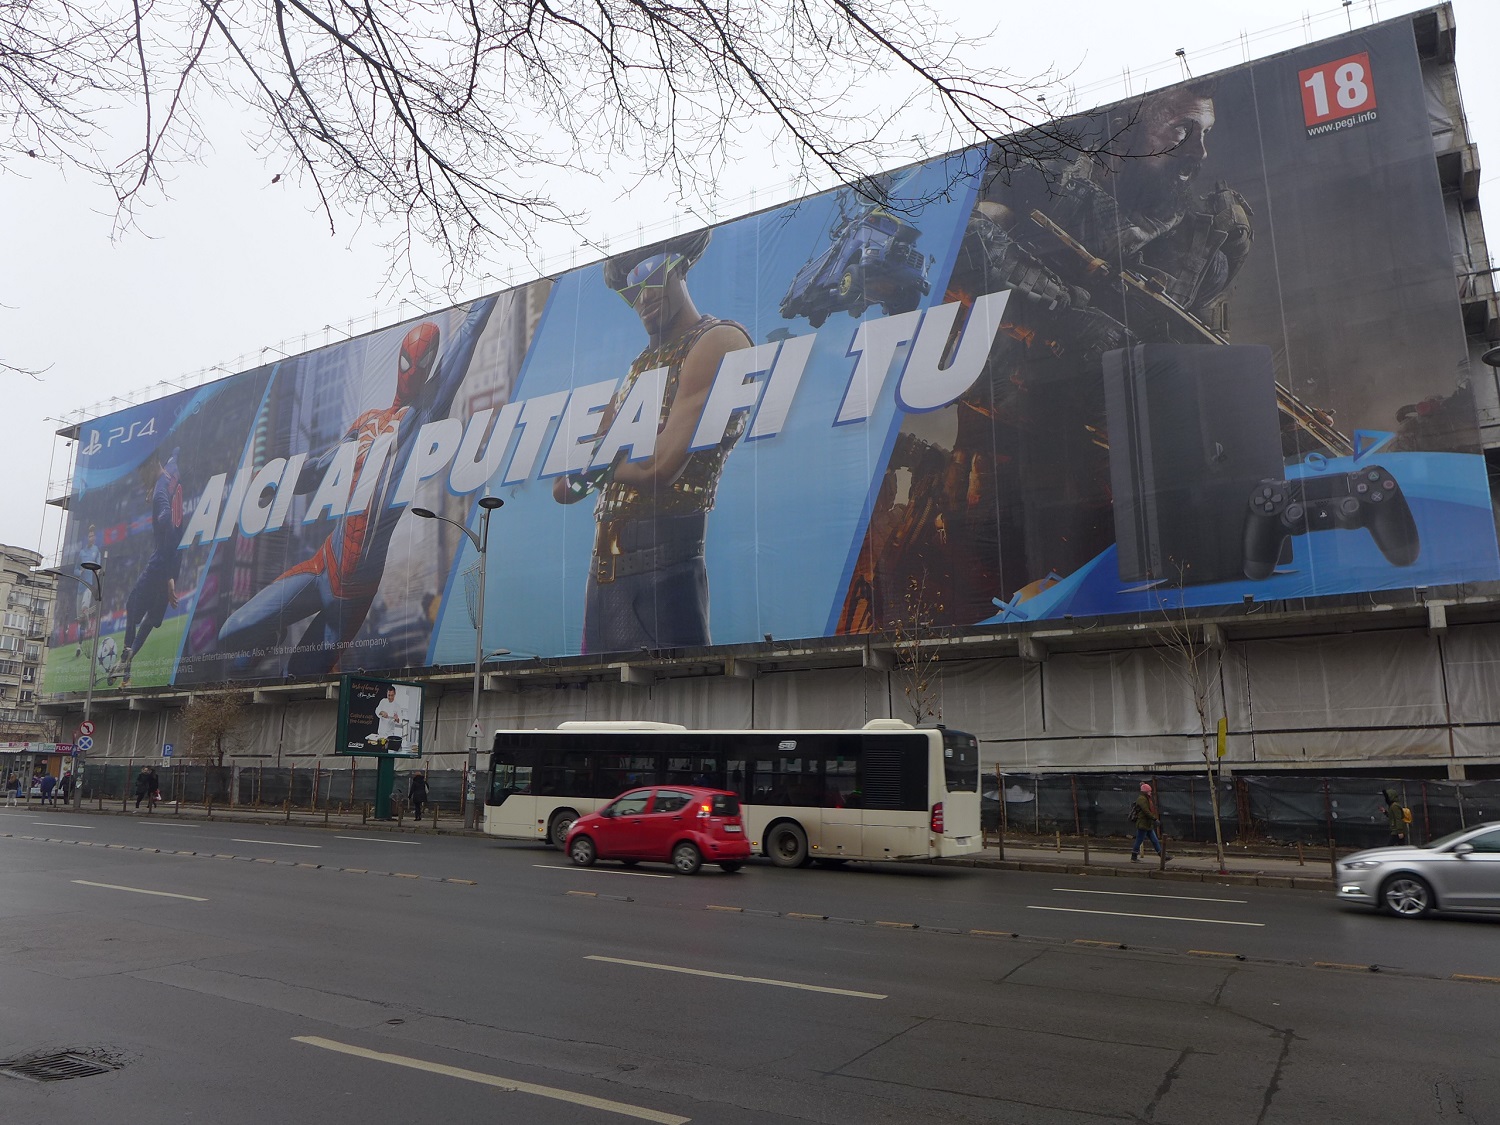 Publicité géante pour des jeux vidéo dans une rue de Bucarest.